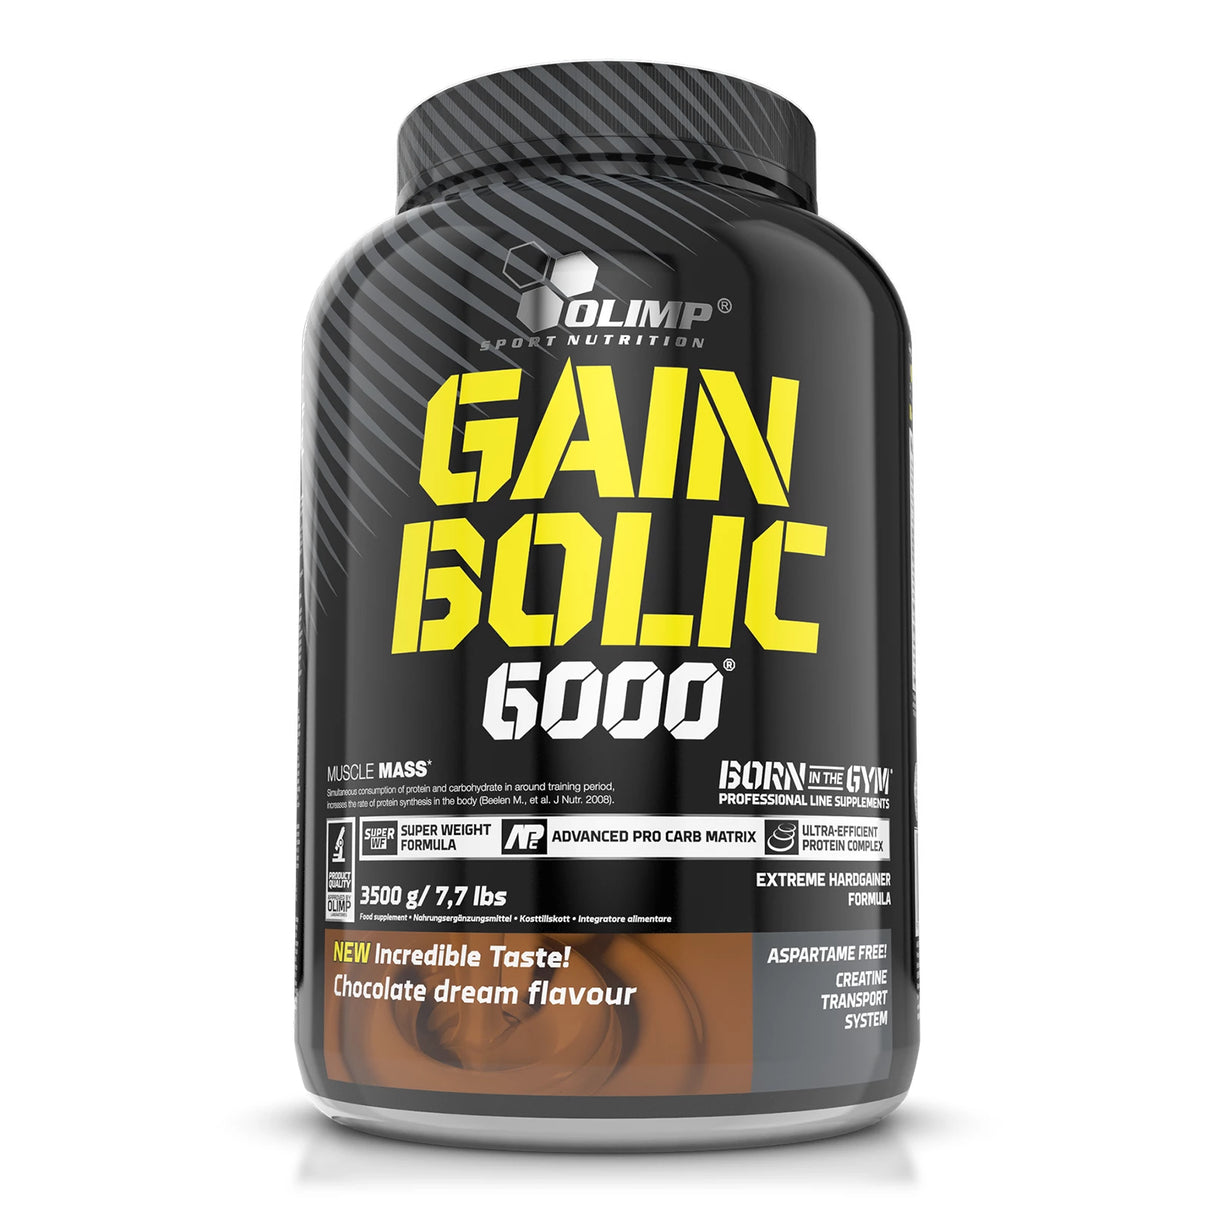 GAIN BOLIC 6000 - 3500G Olimp Sport Nutrition